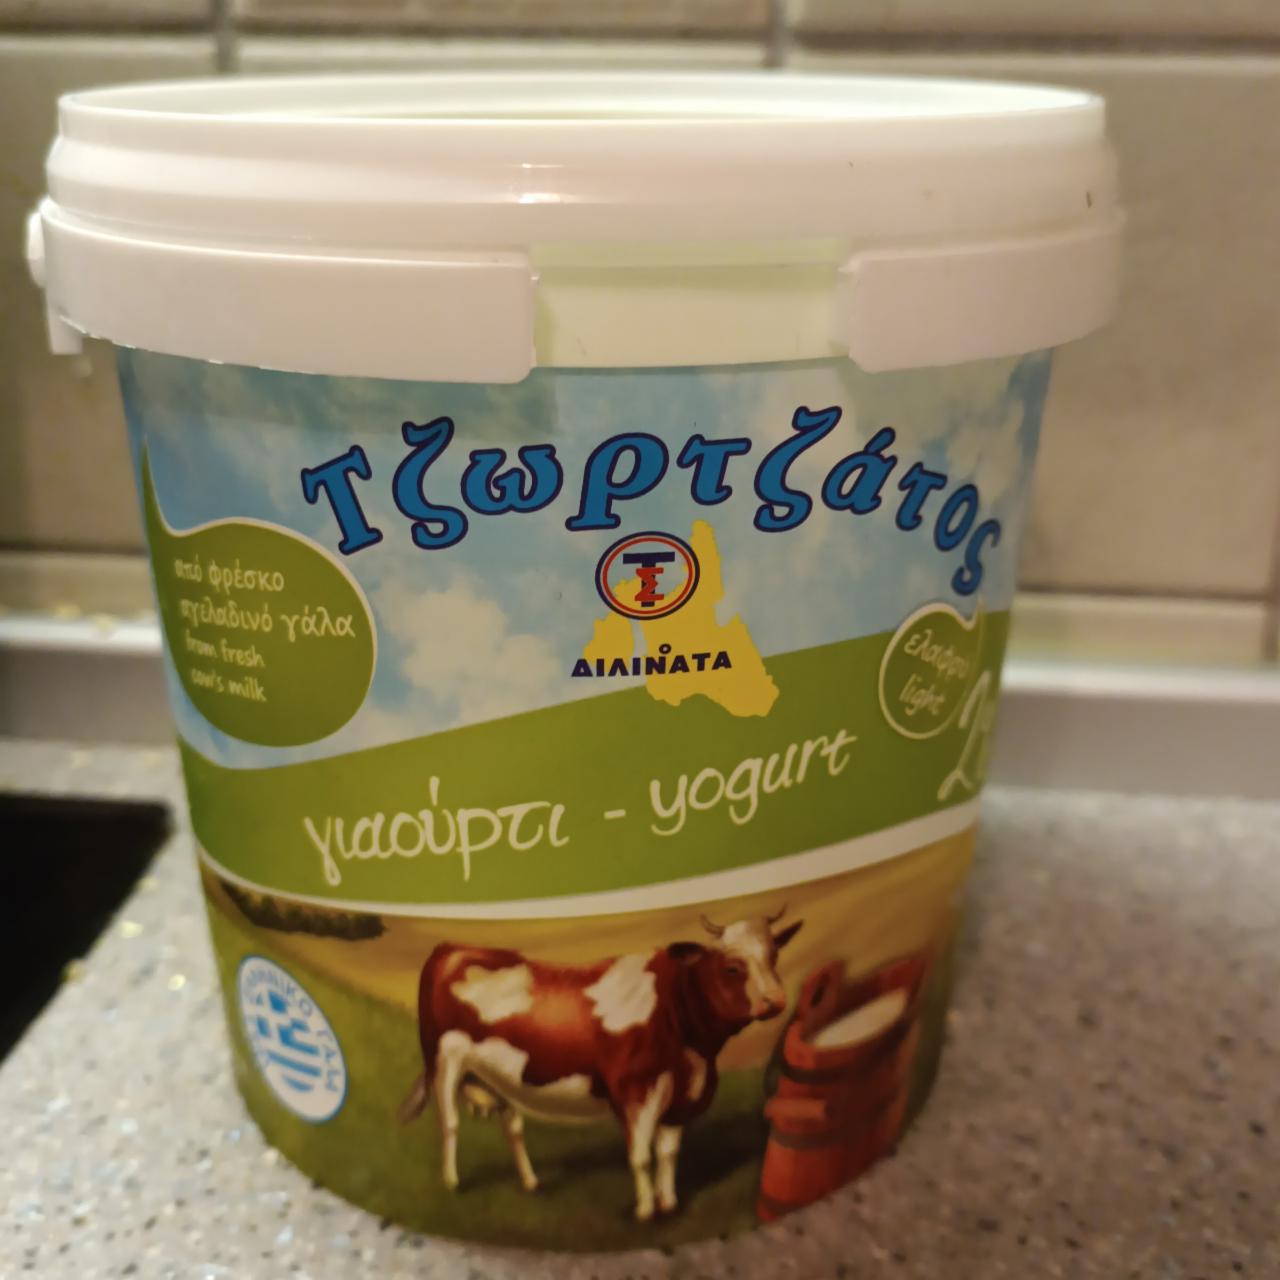 Fotografie - Yogurt 2% Tzortzatos Kefalonia